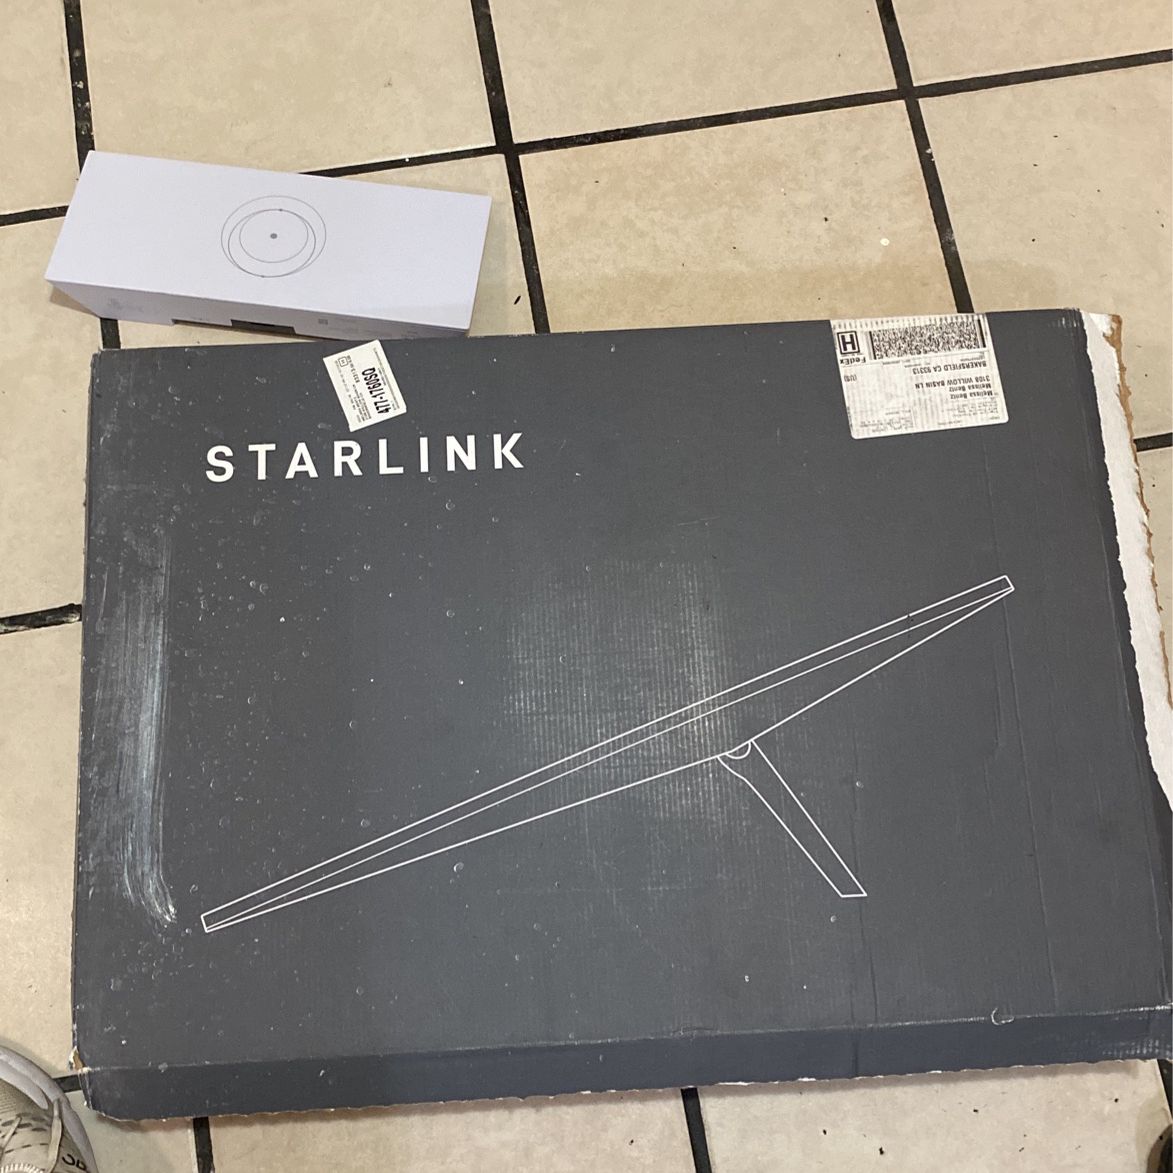 Starlink Standard Wi-Fi System